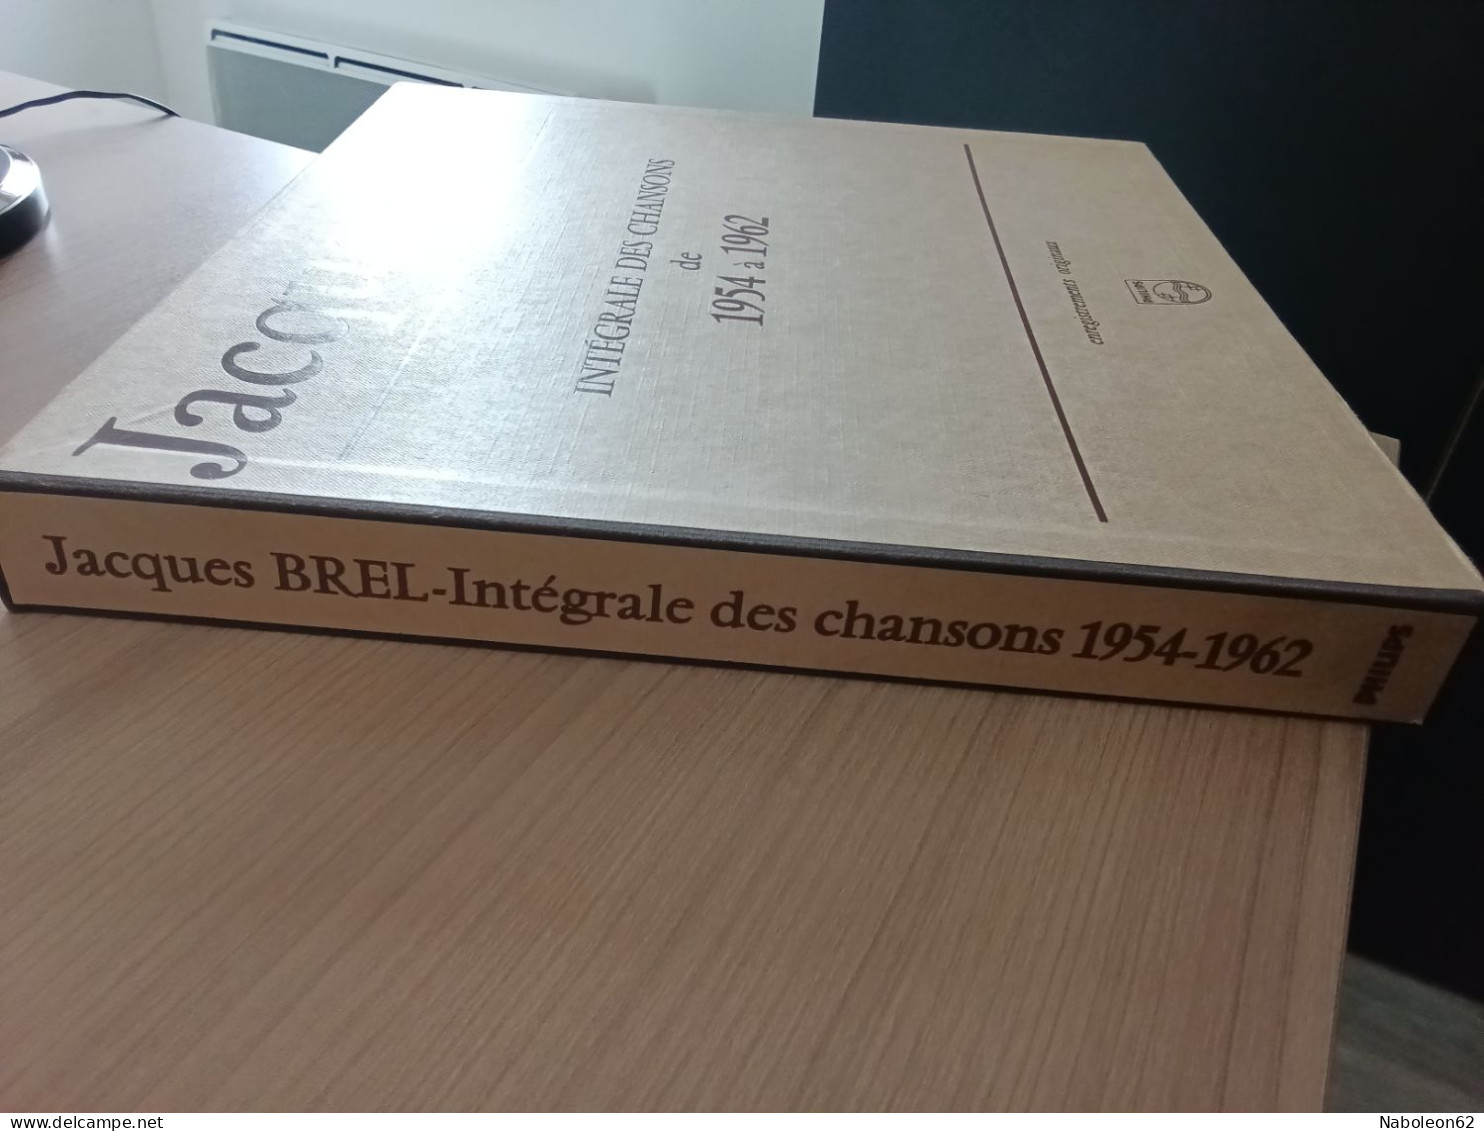 Coffret Jacques Brel Intégrale Des Chansons De 1954 à 1962 - Other - French Music